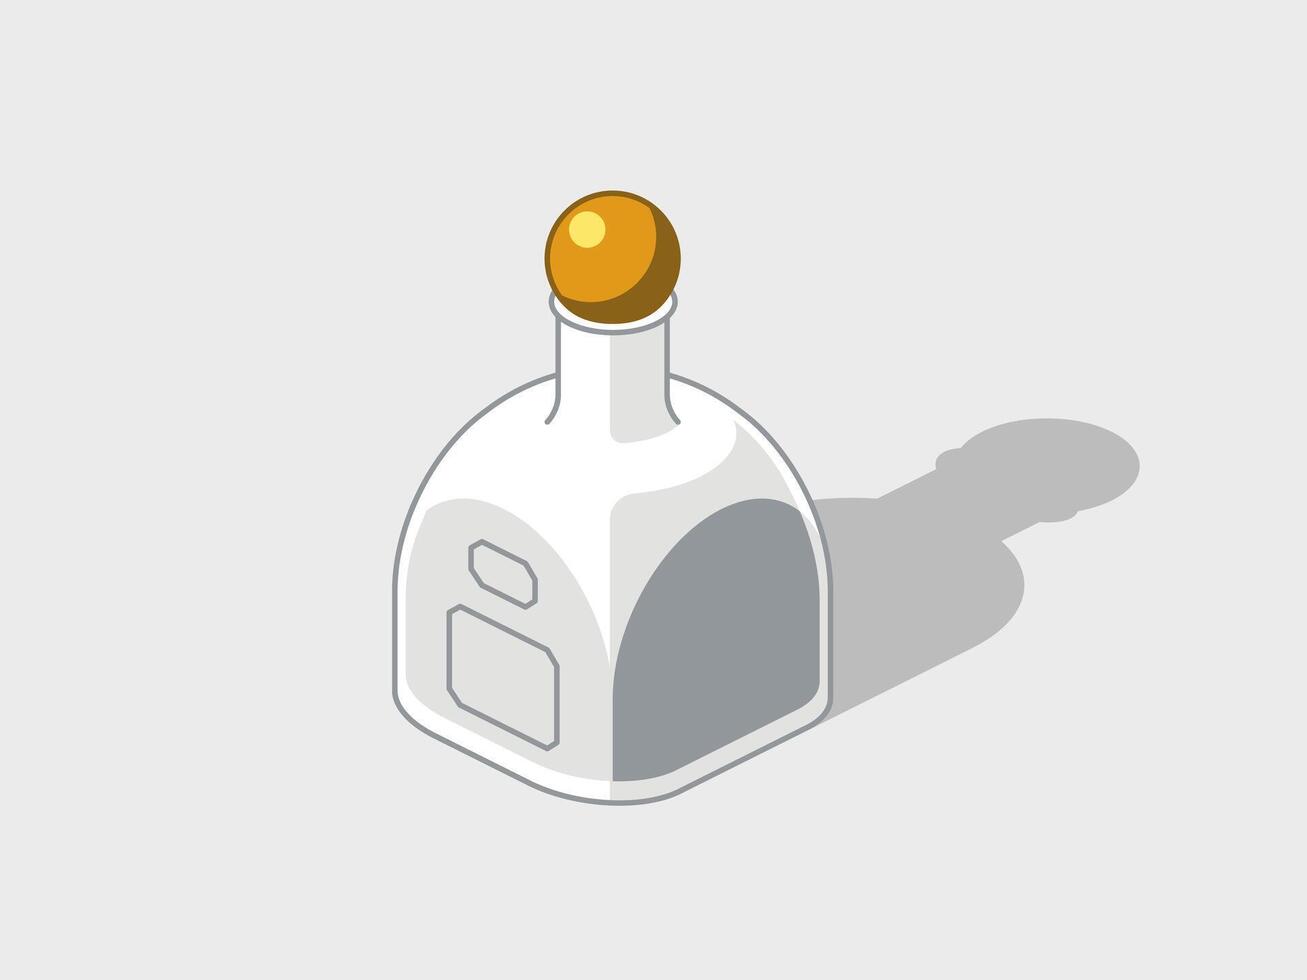 fles van tequila isometrische illustratie met schaduw vector